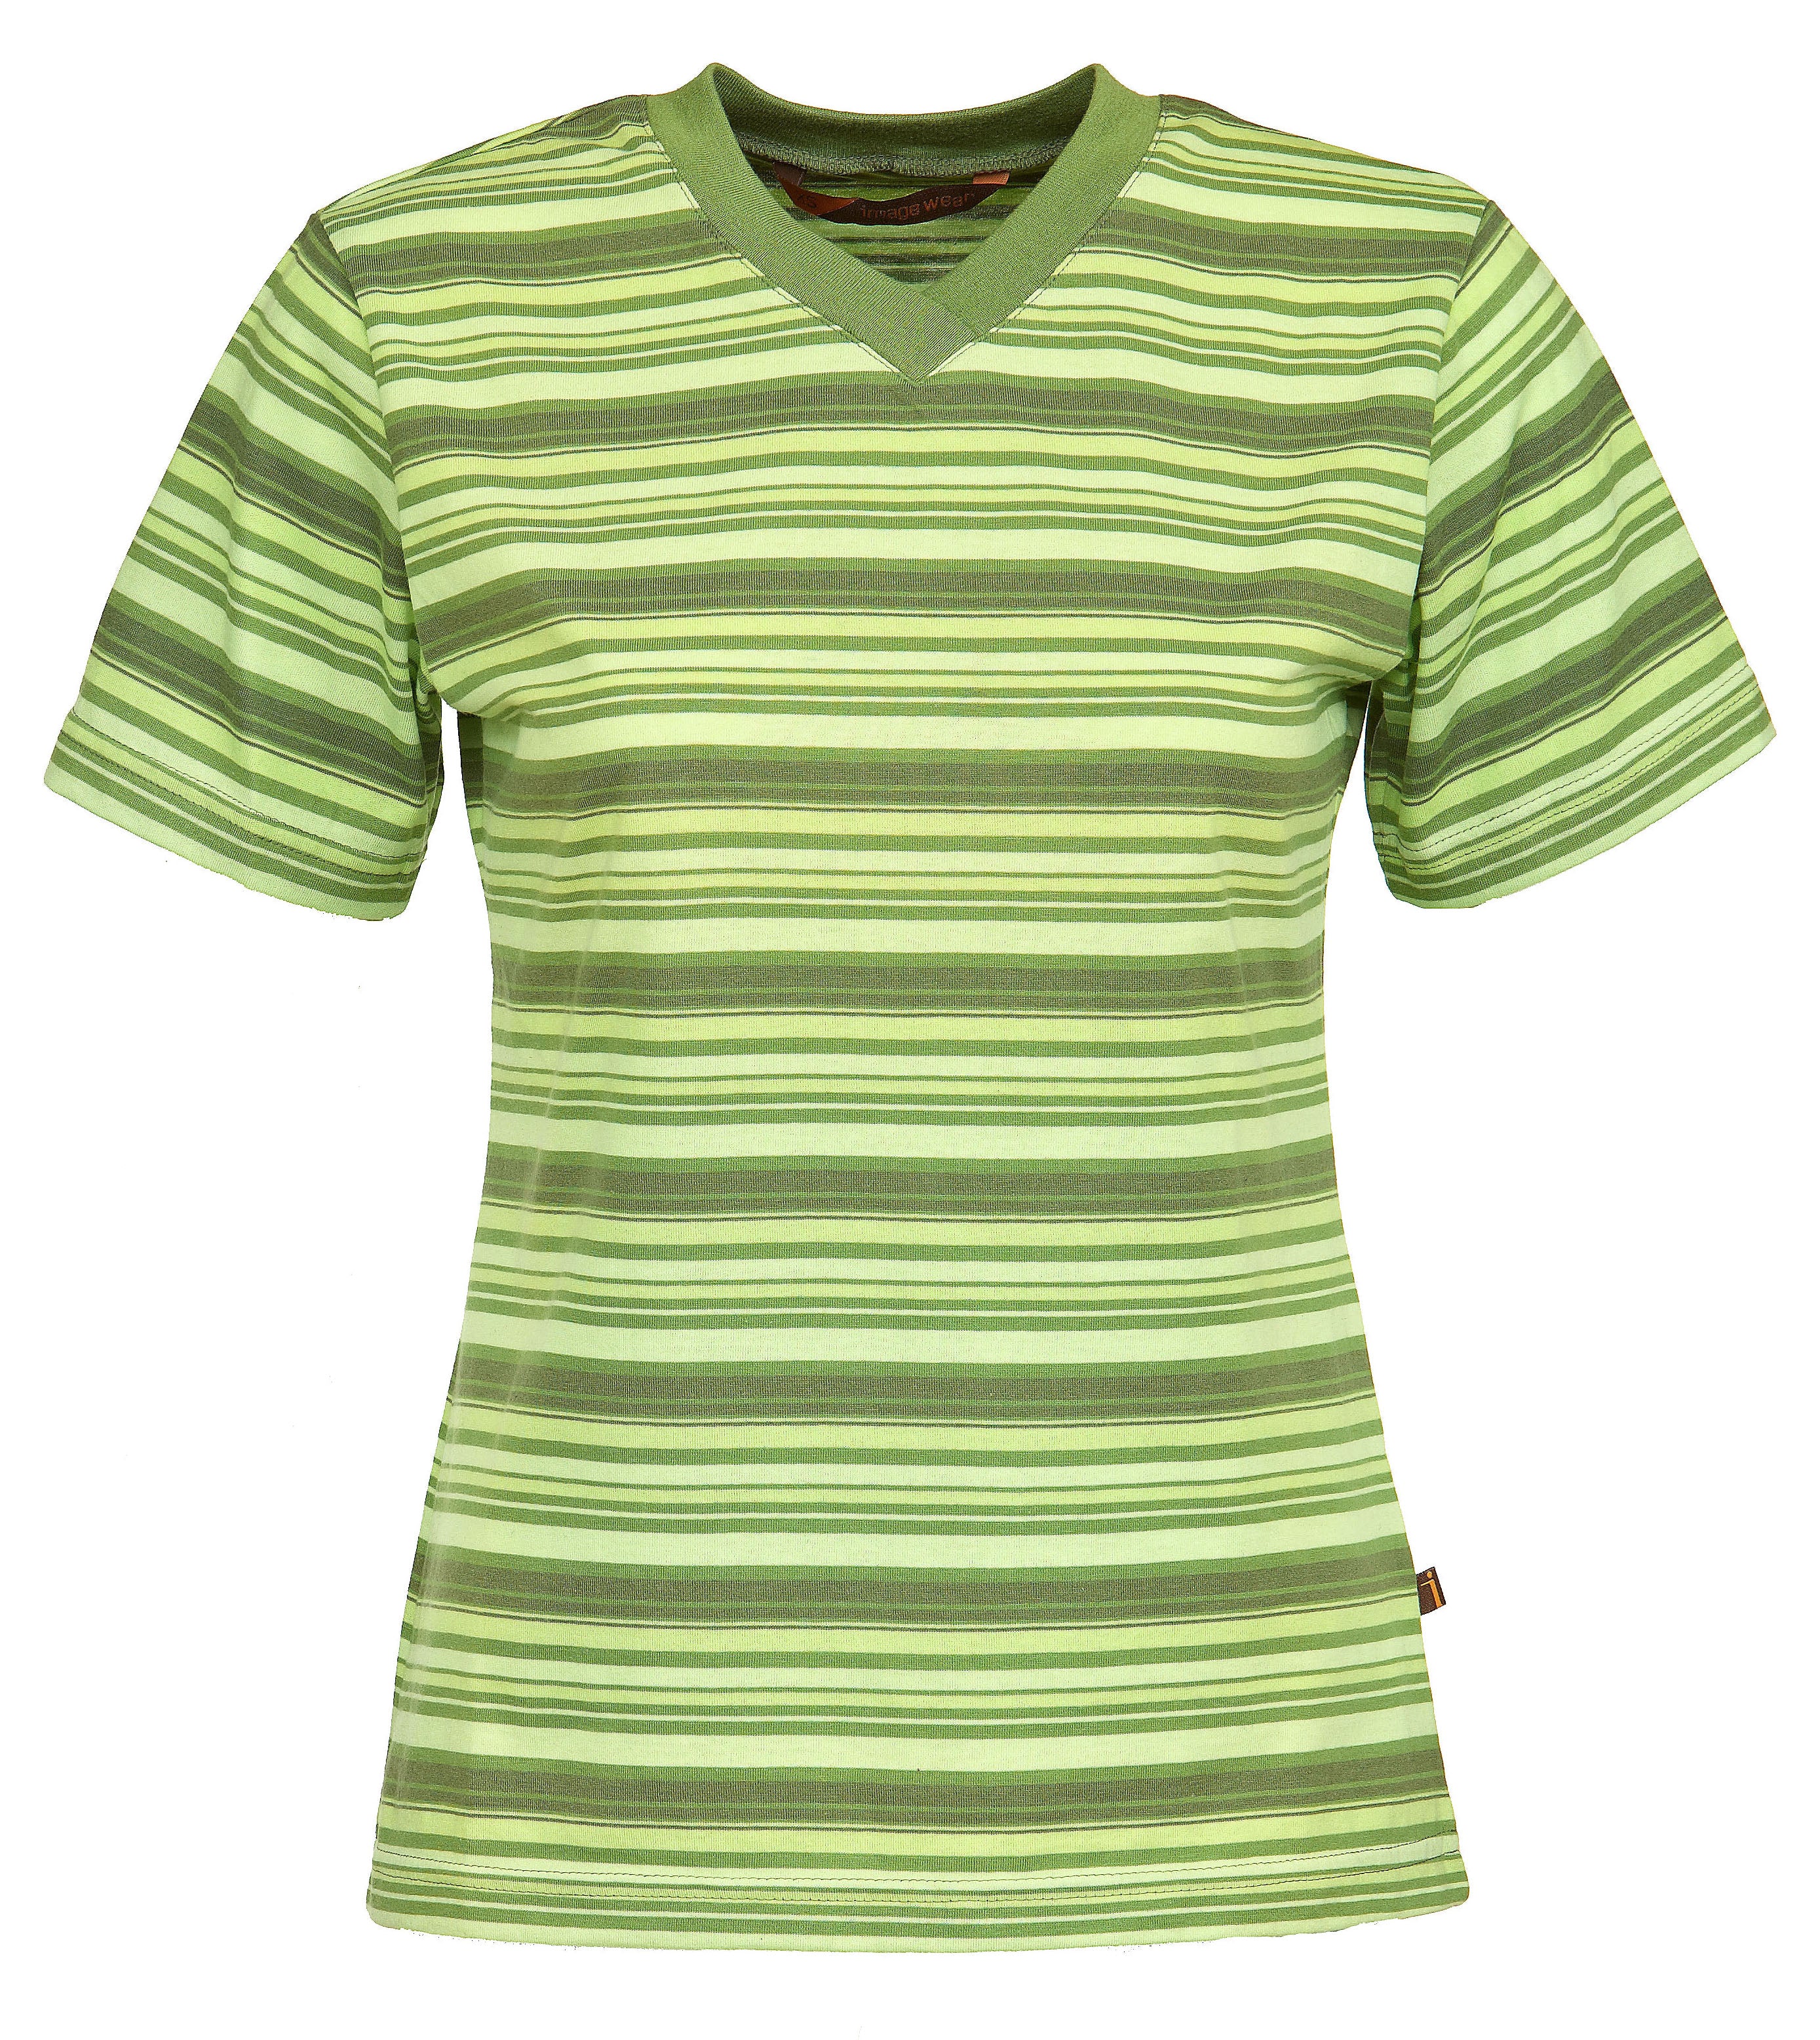 Naisten lyhythihainen raidallinen t-paita. Malli on lyhythihainen, v-pääntiellä. Aavistuksen tyköistuva malli. Raidan värit vihreän eri sävyjä. 